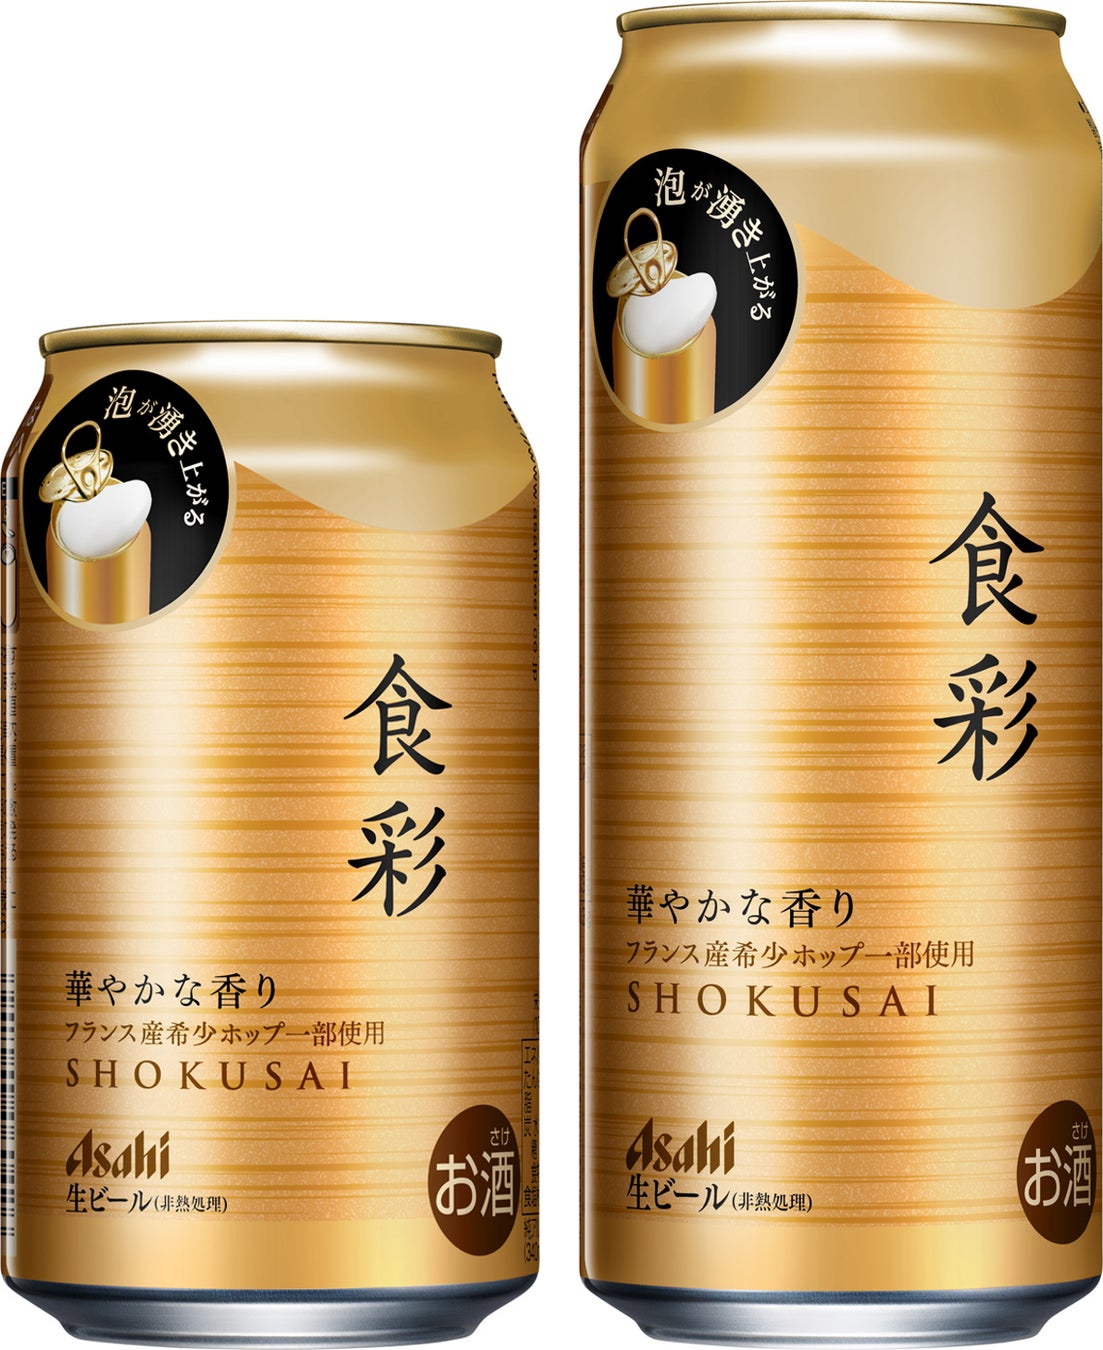 生ジョッキ缶初のプレミアムビール『アサヒ食彩』　3月5日から全業態で全国発売